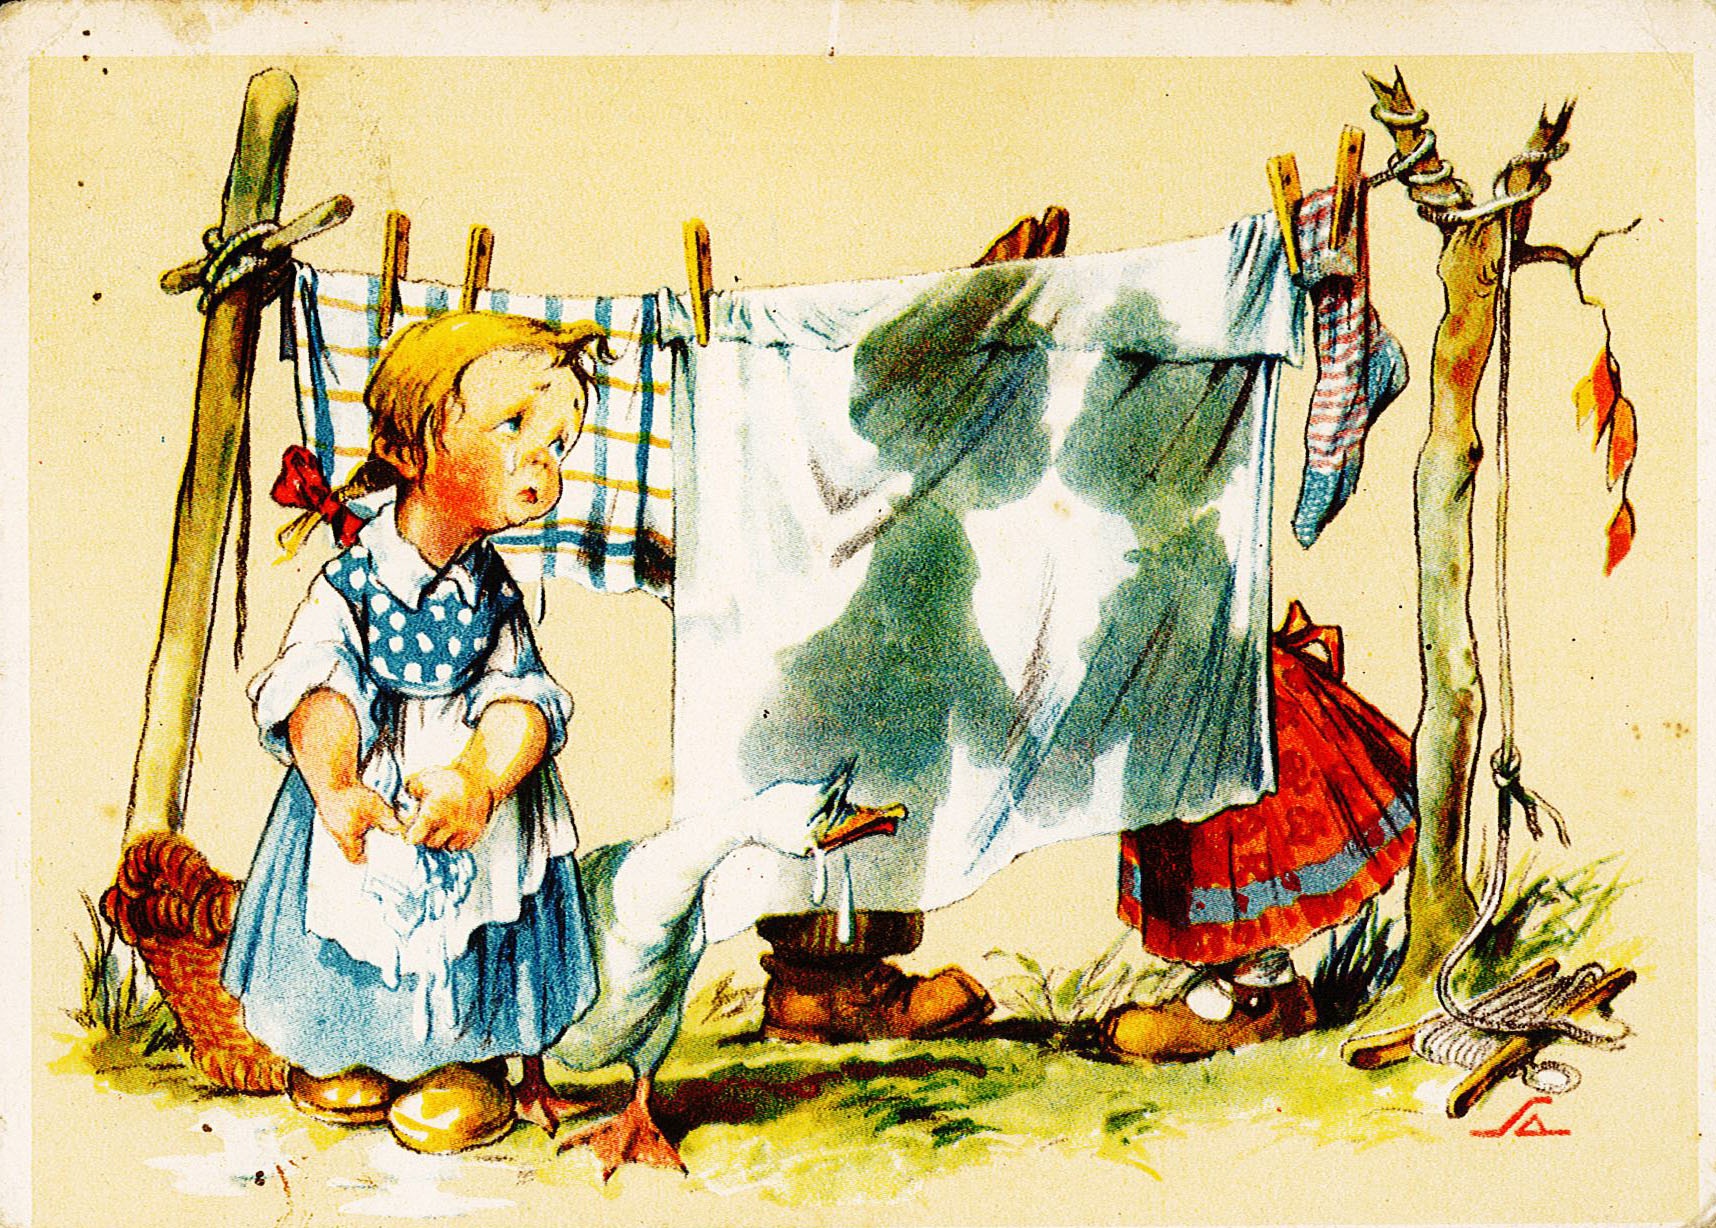 Postkarte an Ingeborg Range von Theodor Siebert, 1. Februar 1948 (Museum Wolmirstedt RR-F)